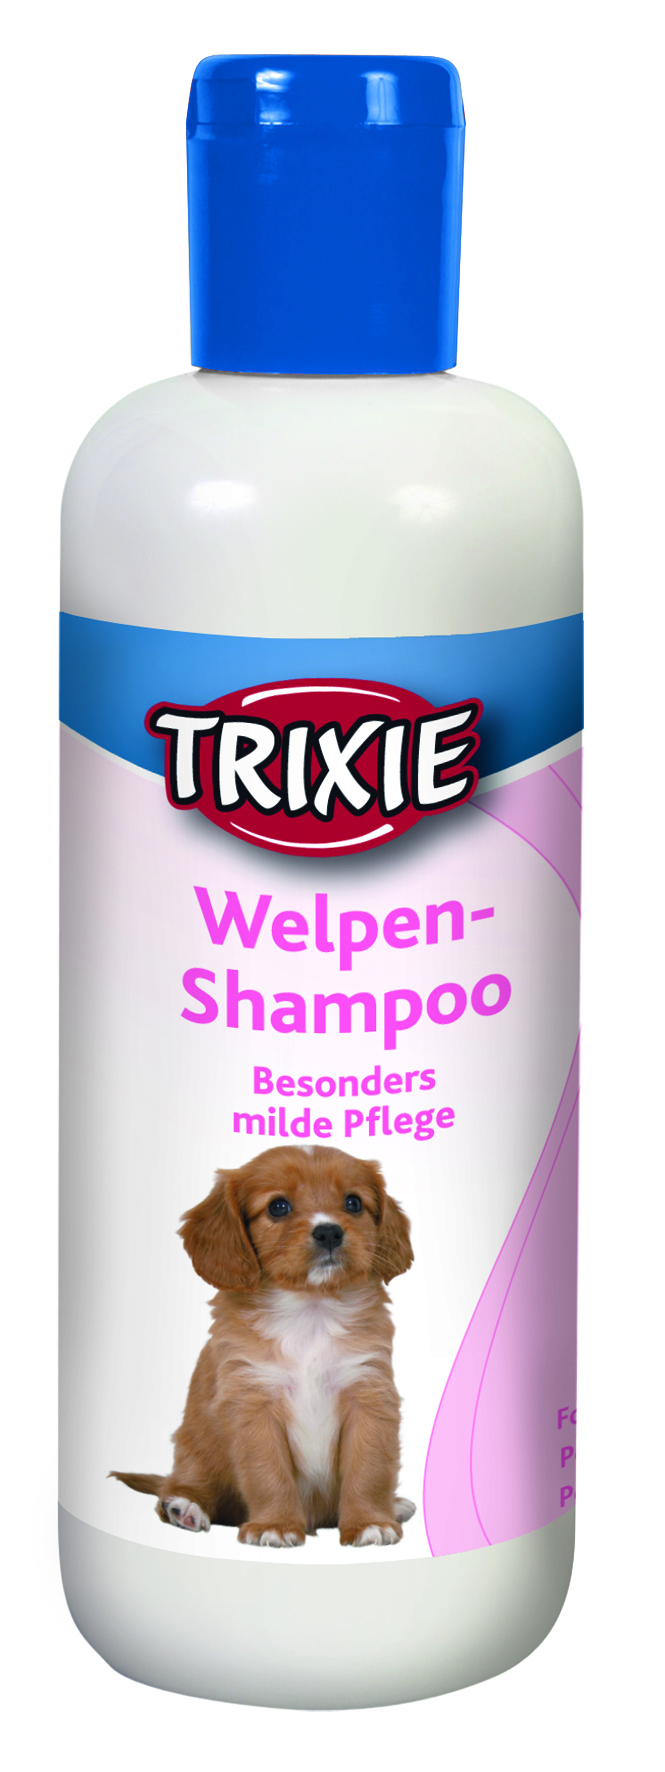 Welpen-Shampoo, 350 ml